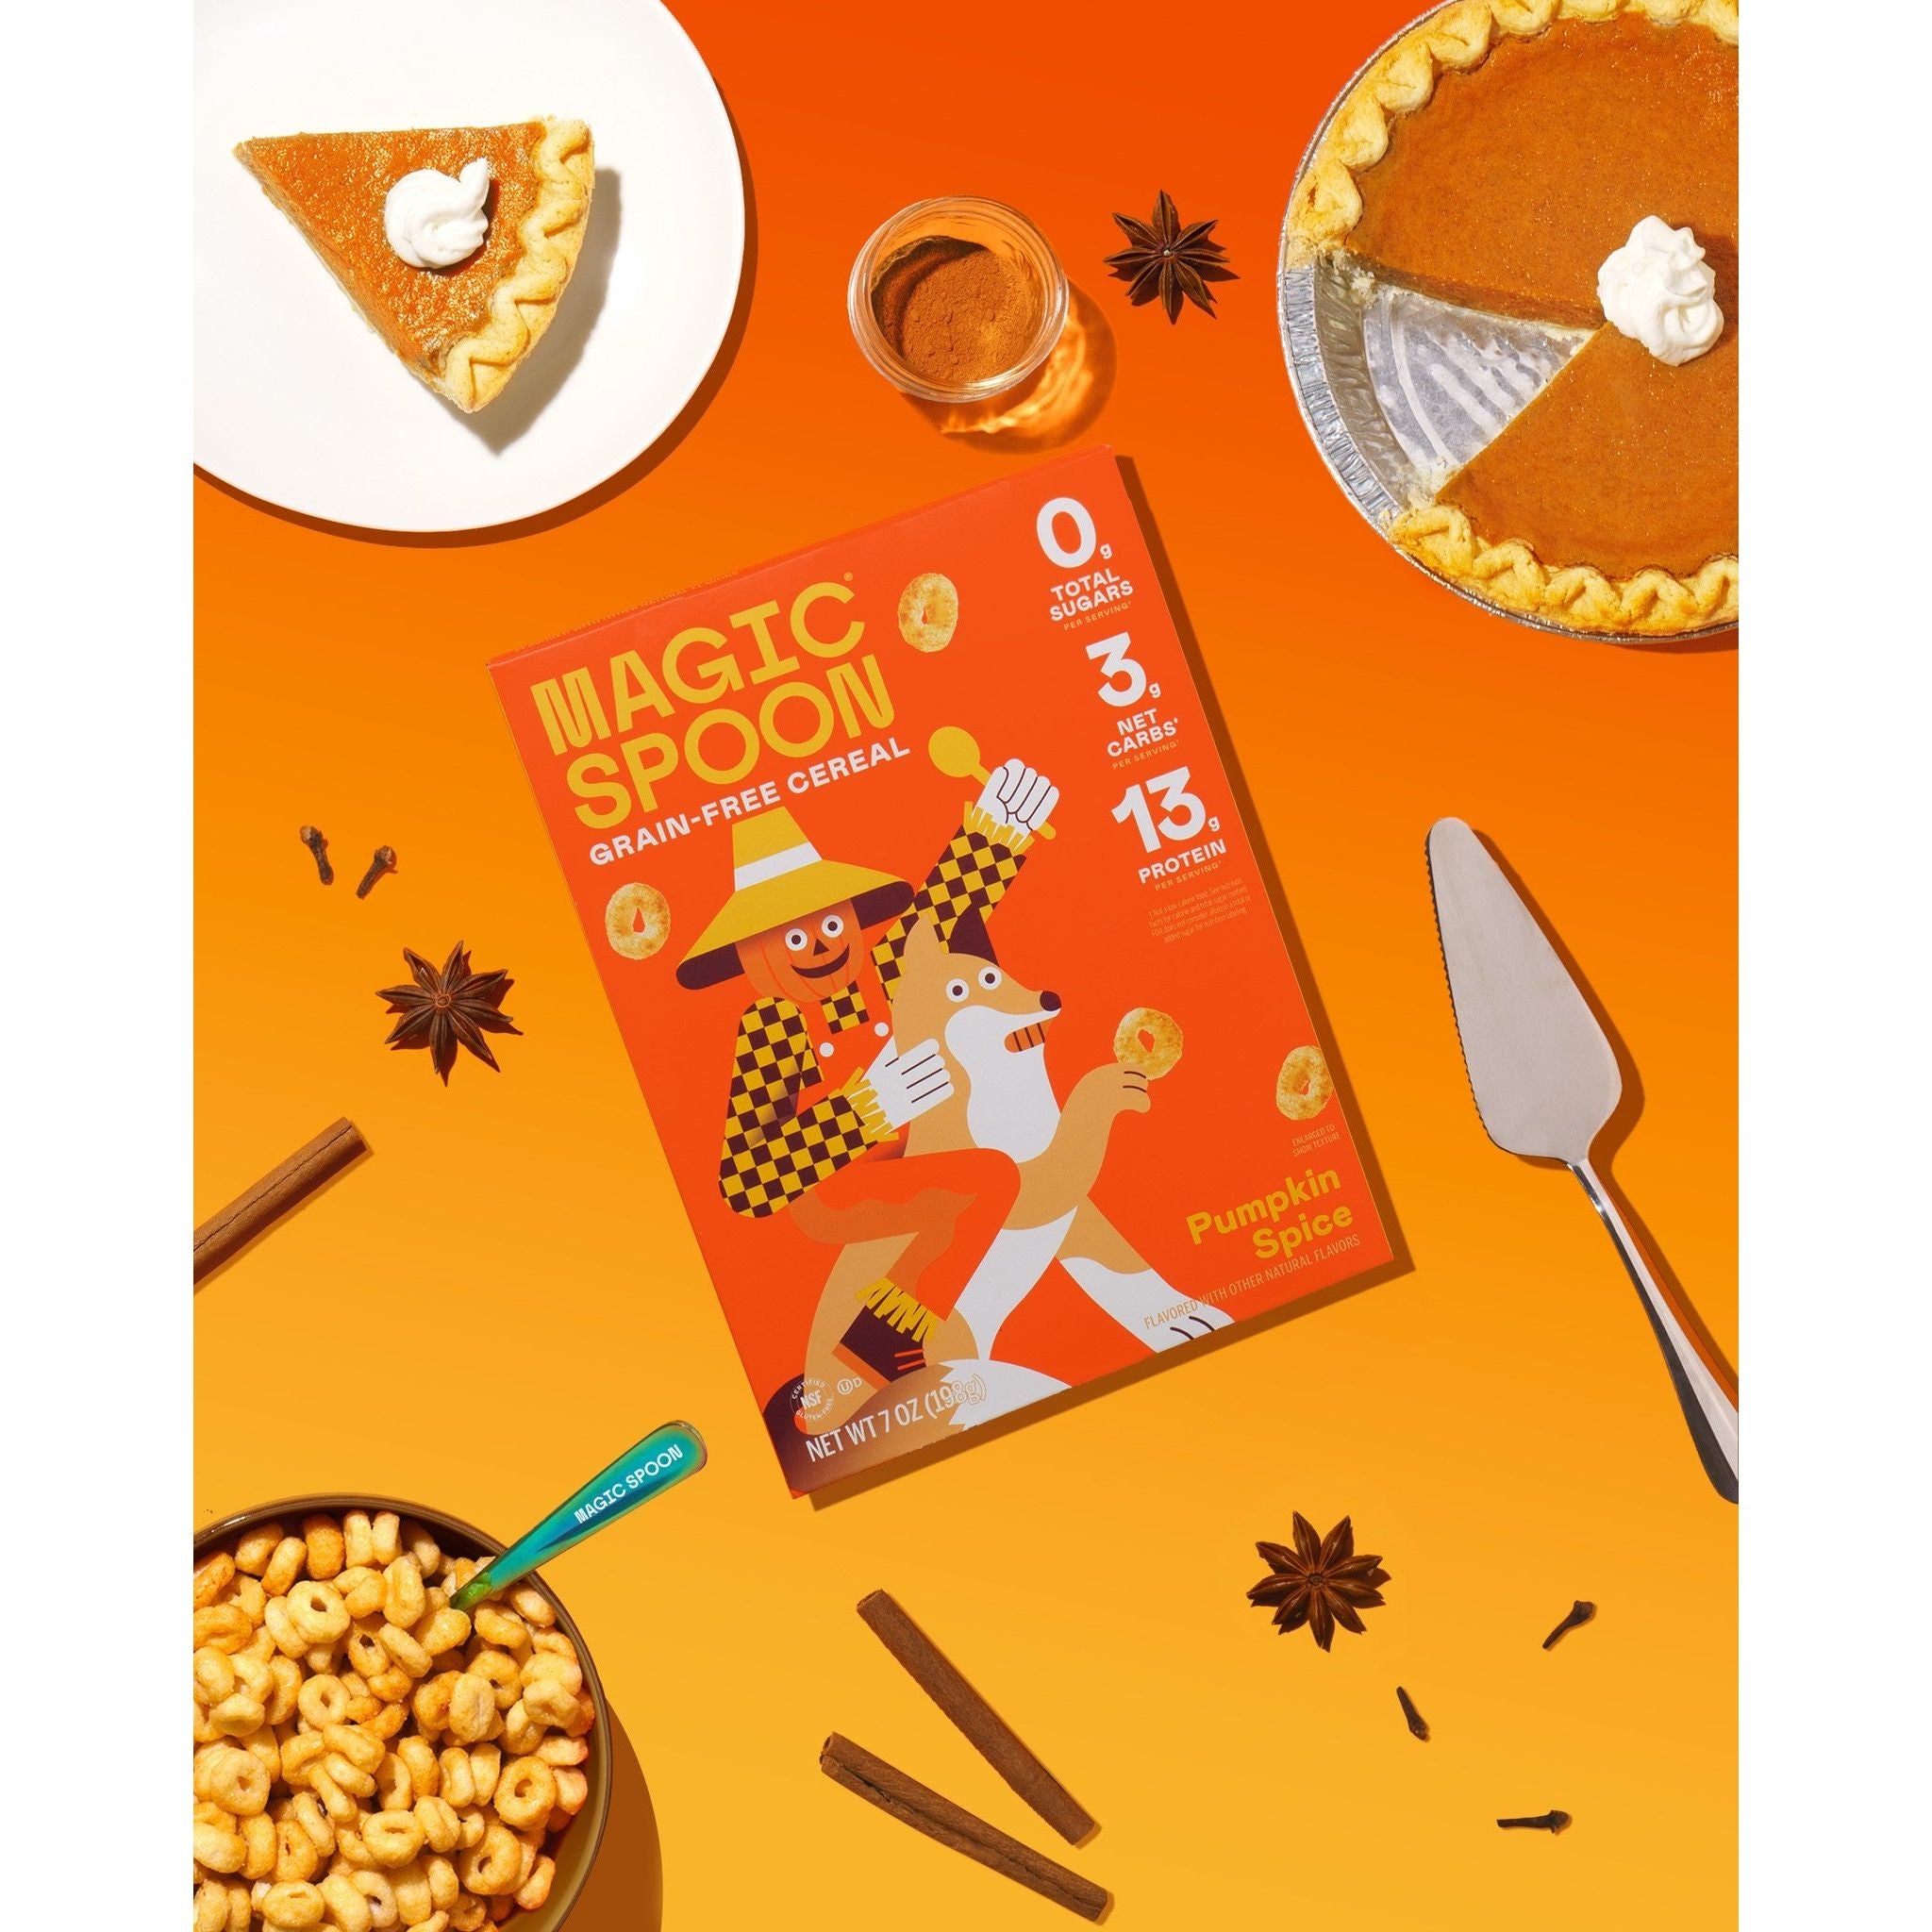 Céréales protéinées Magic Spoon Keto (1 boîte)